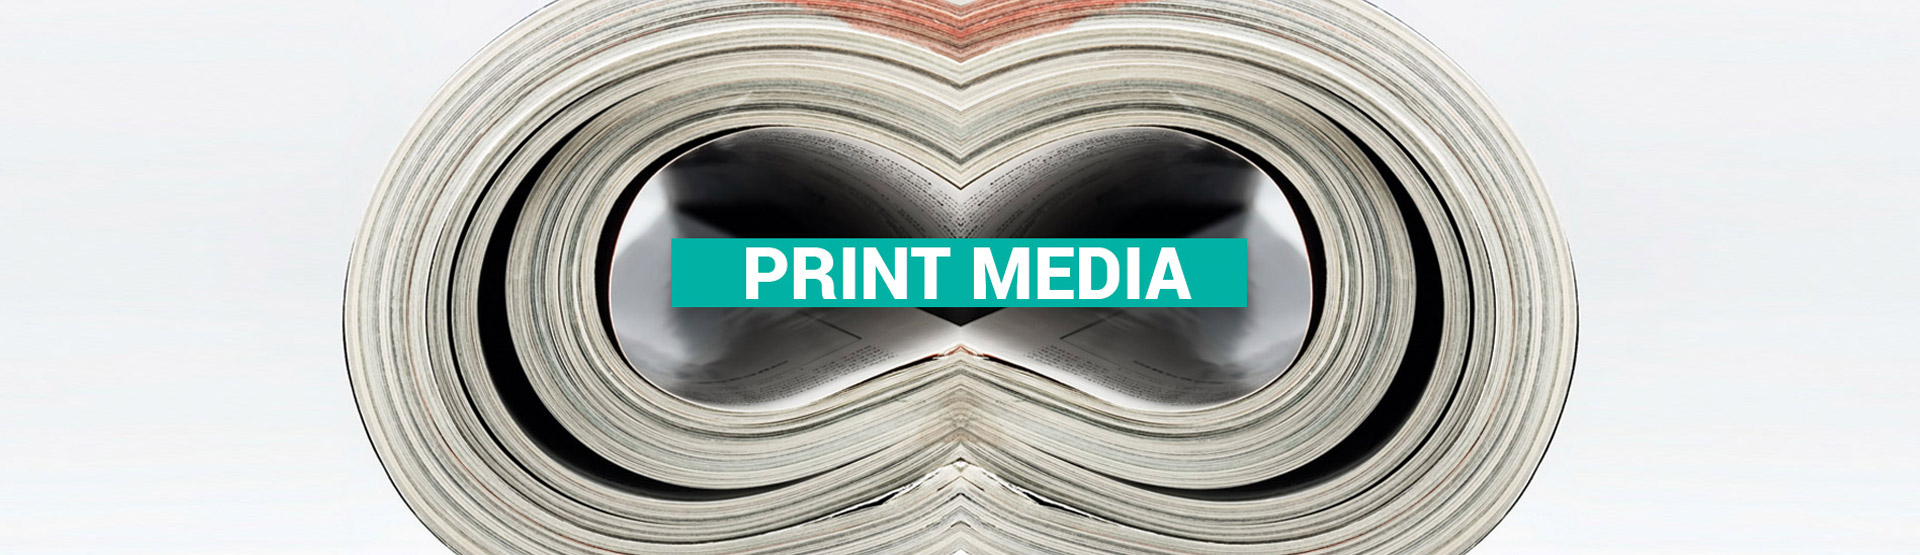 print/media-banner